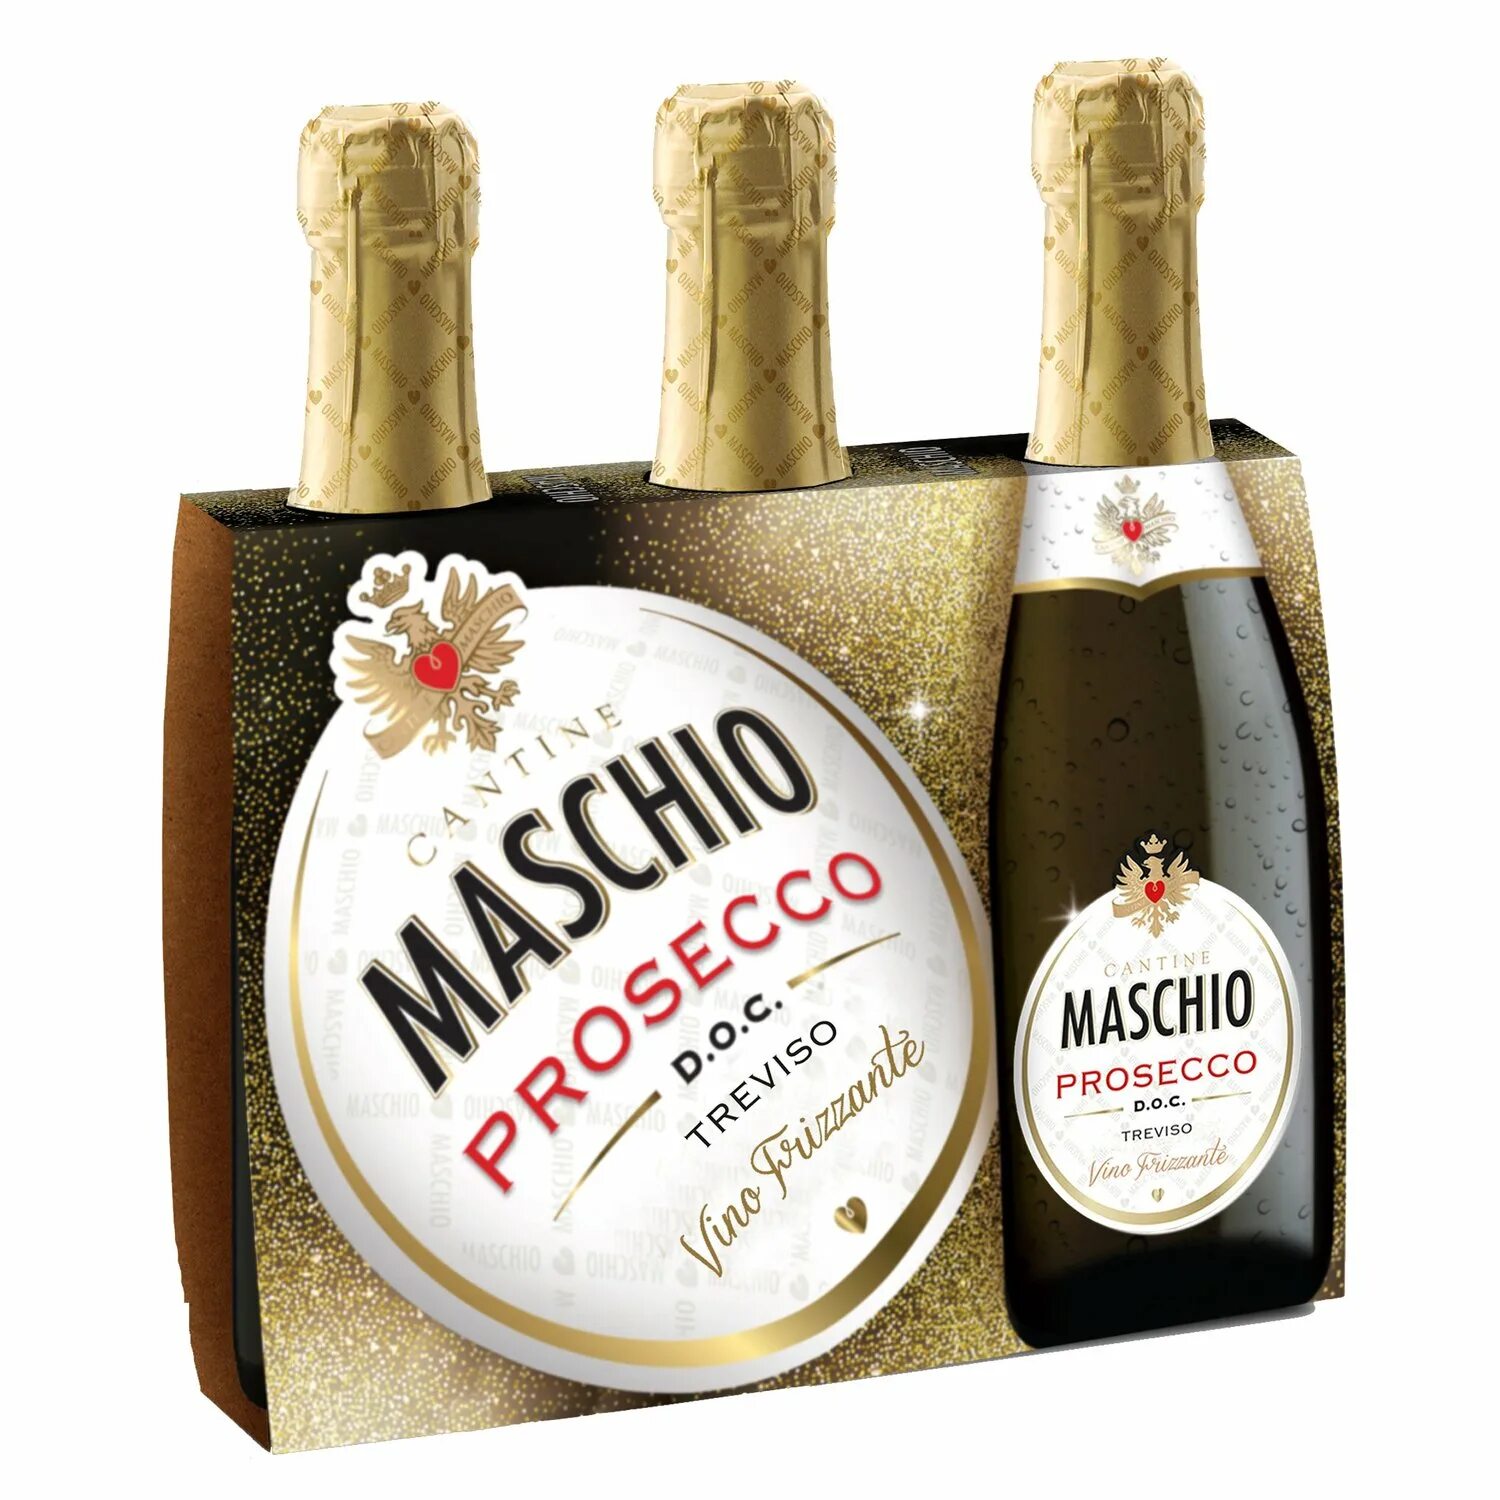 Маскио Просекко Тревизо. Maschio Prosecco шампанское Treviso. Маскио Просекко Тревизо Экстра драй. Маскио Просекко этикетка.